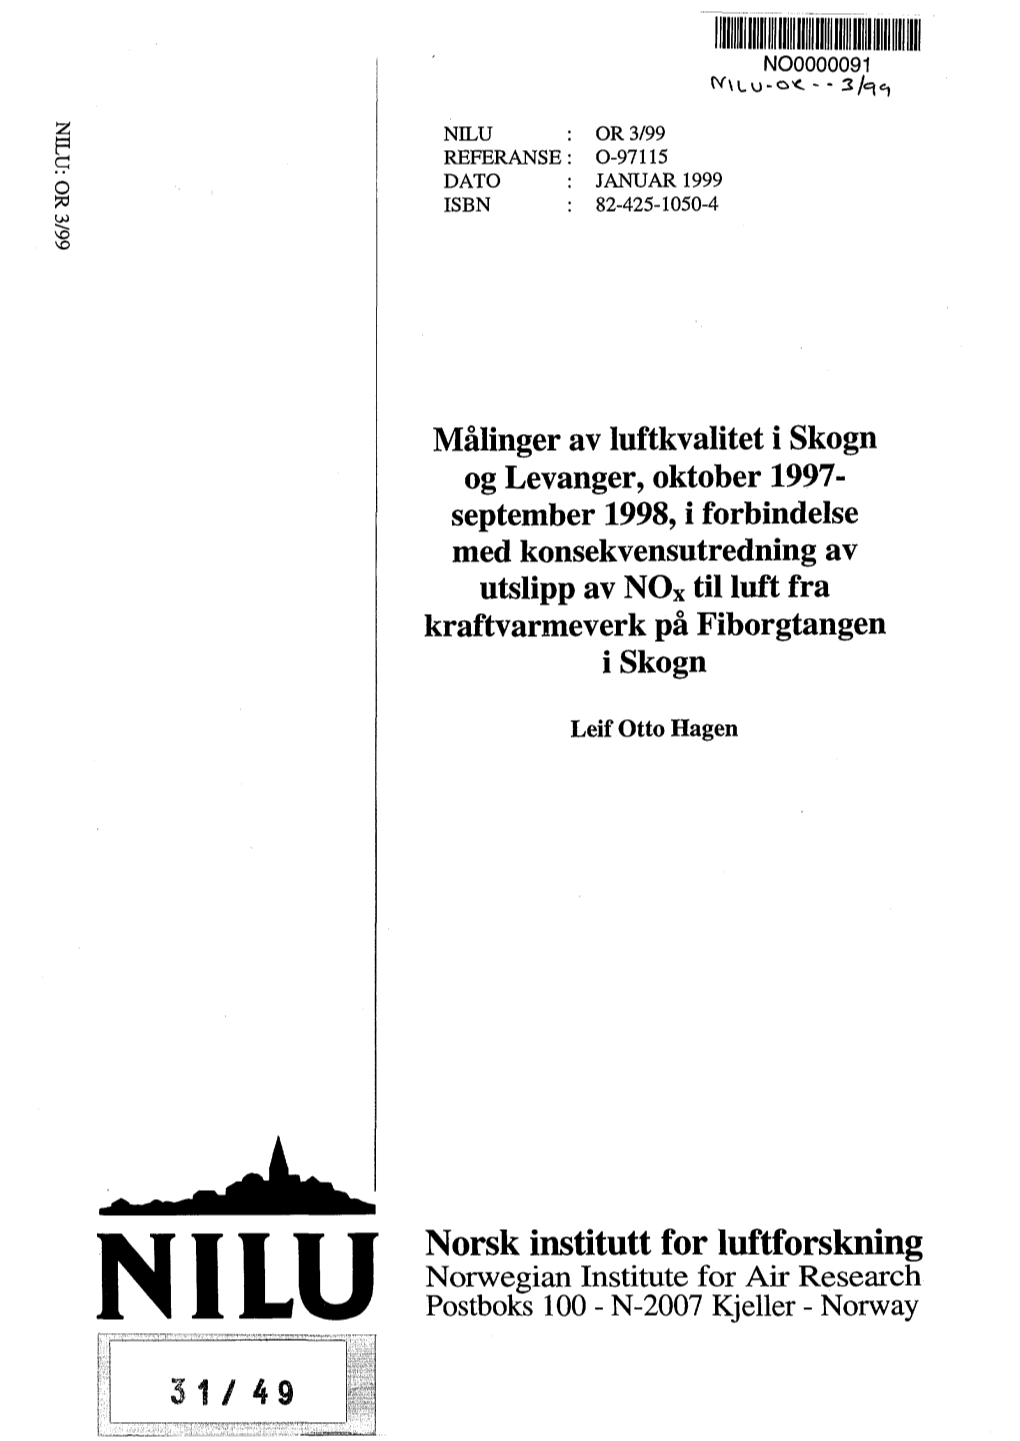 Malinger Av Luftkvalitet I Skogn Og Levanger, Oktober 1997